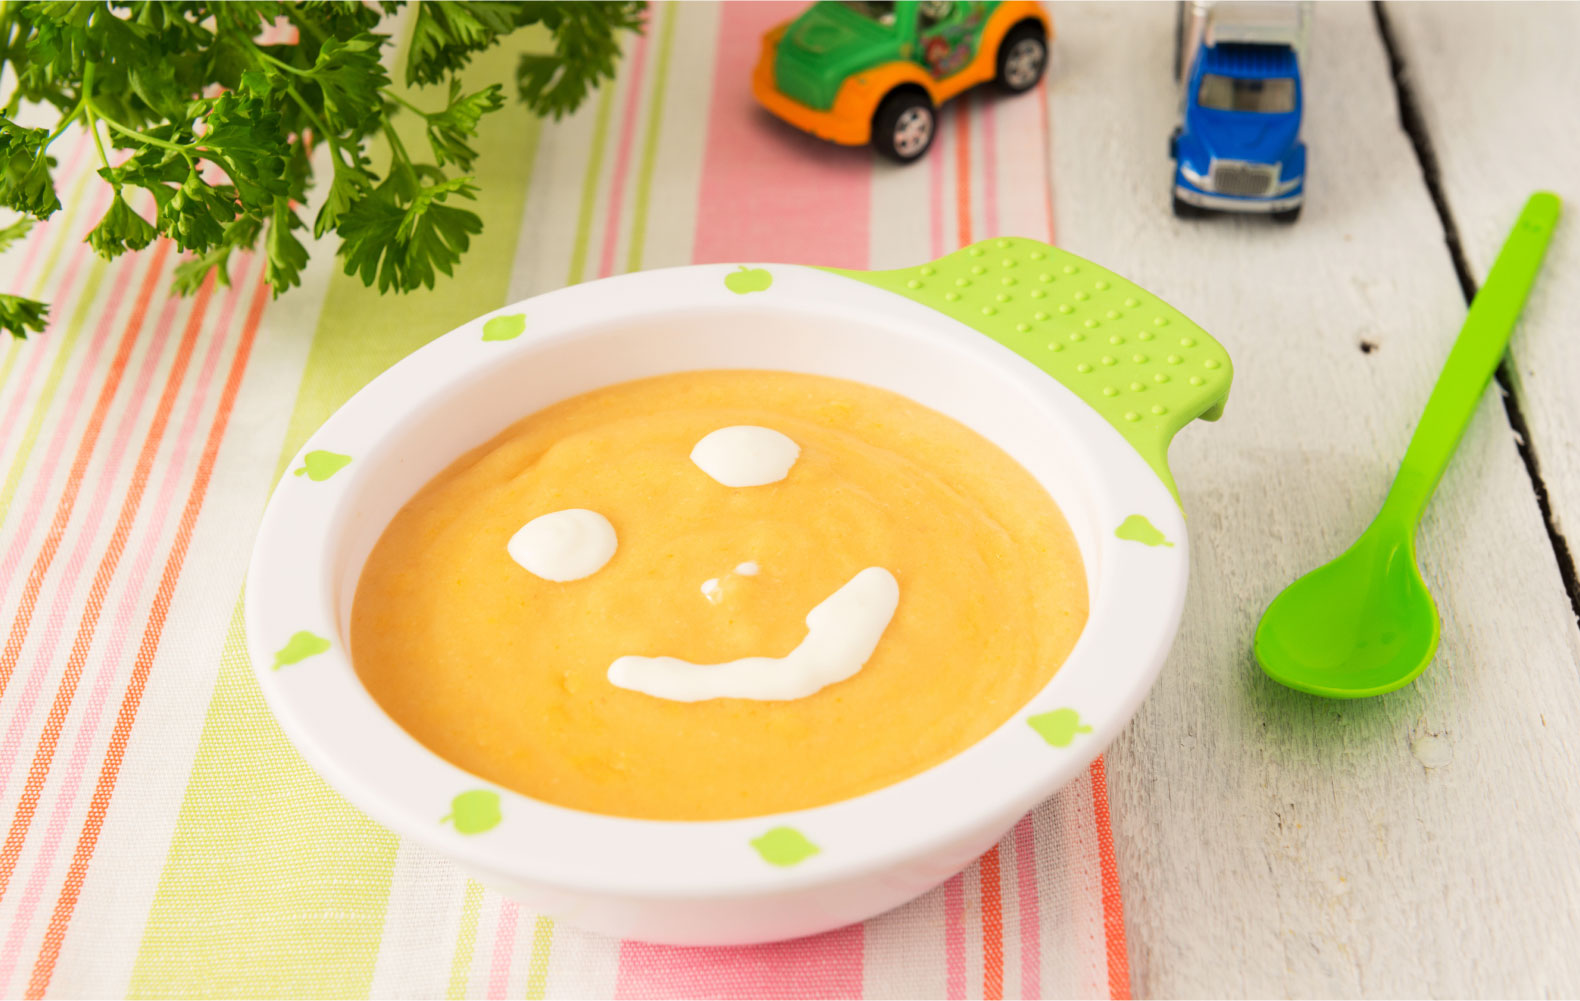 А какие супы подходят для детей раннего возраста?